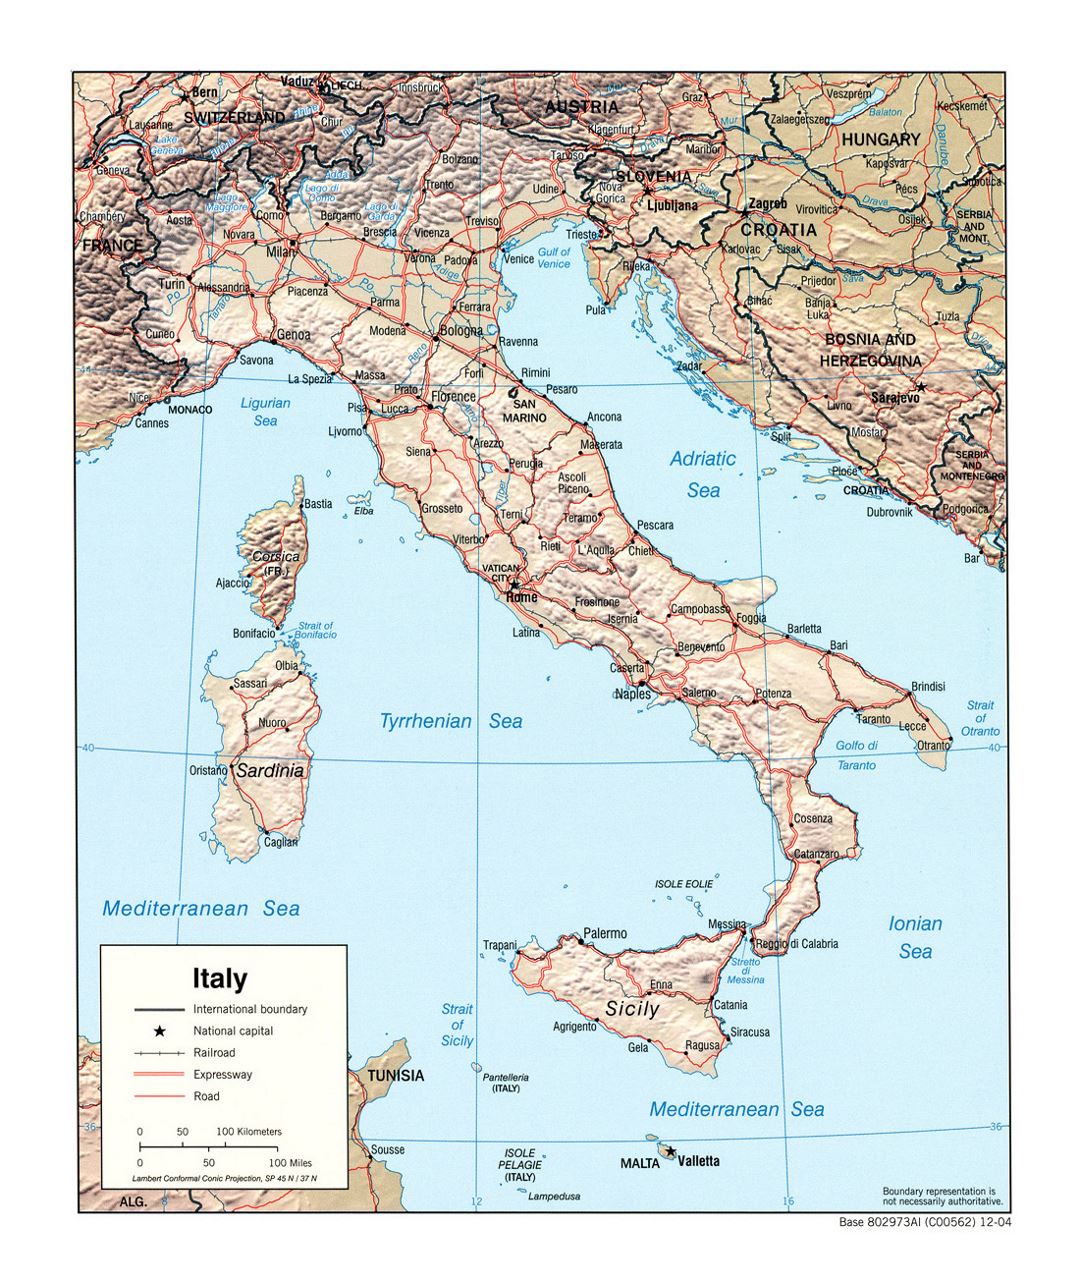 Grande mapa político de Italia, con alivio, carreteras, vías férreas y las principales ciudades - 2004